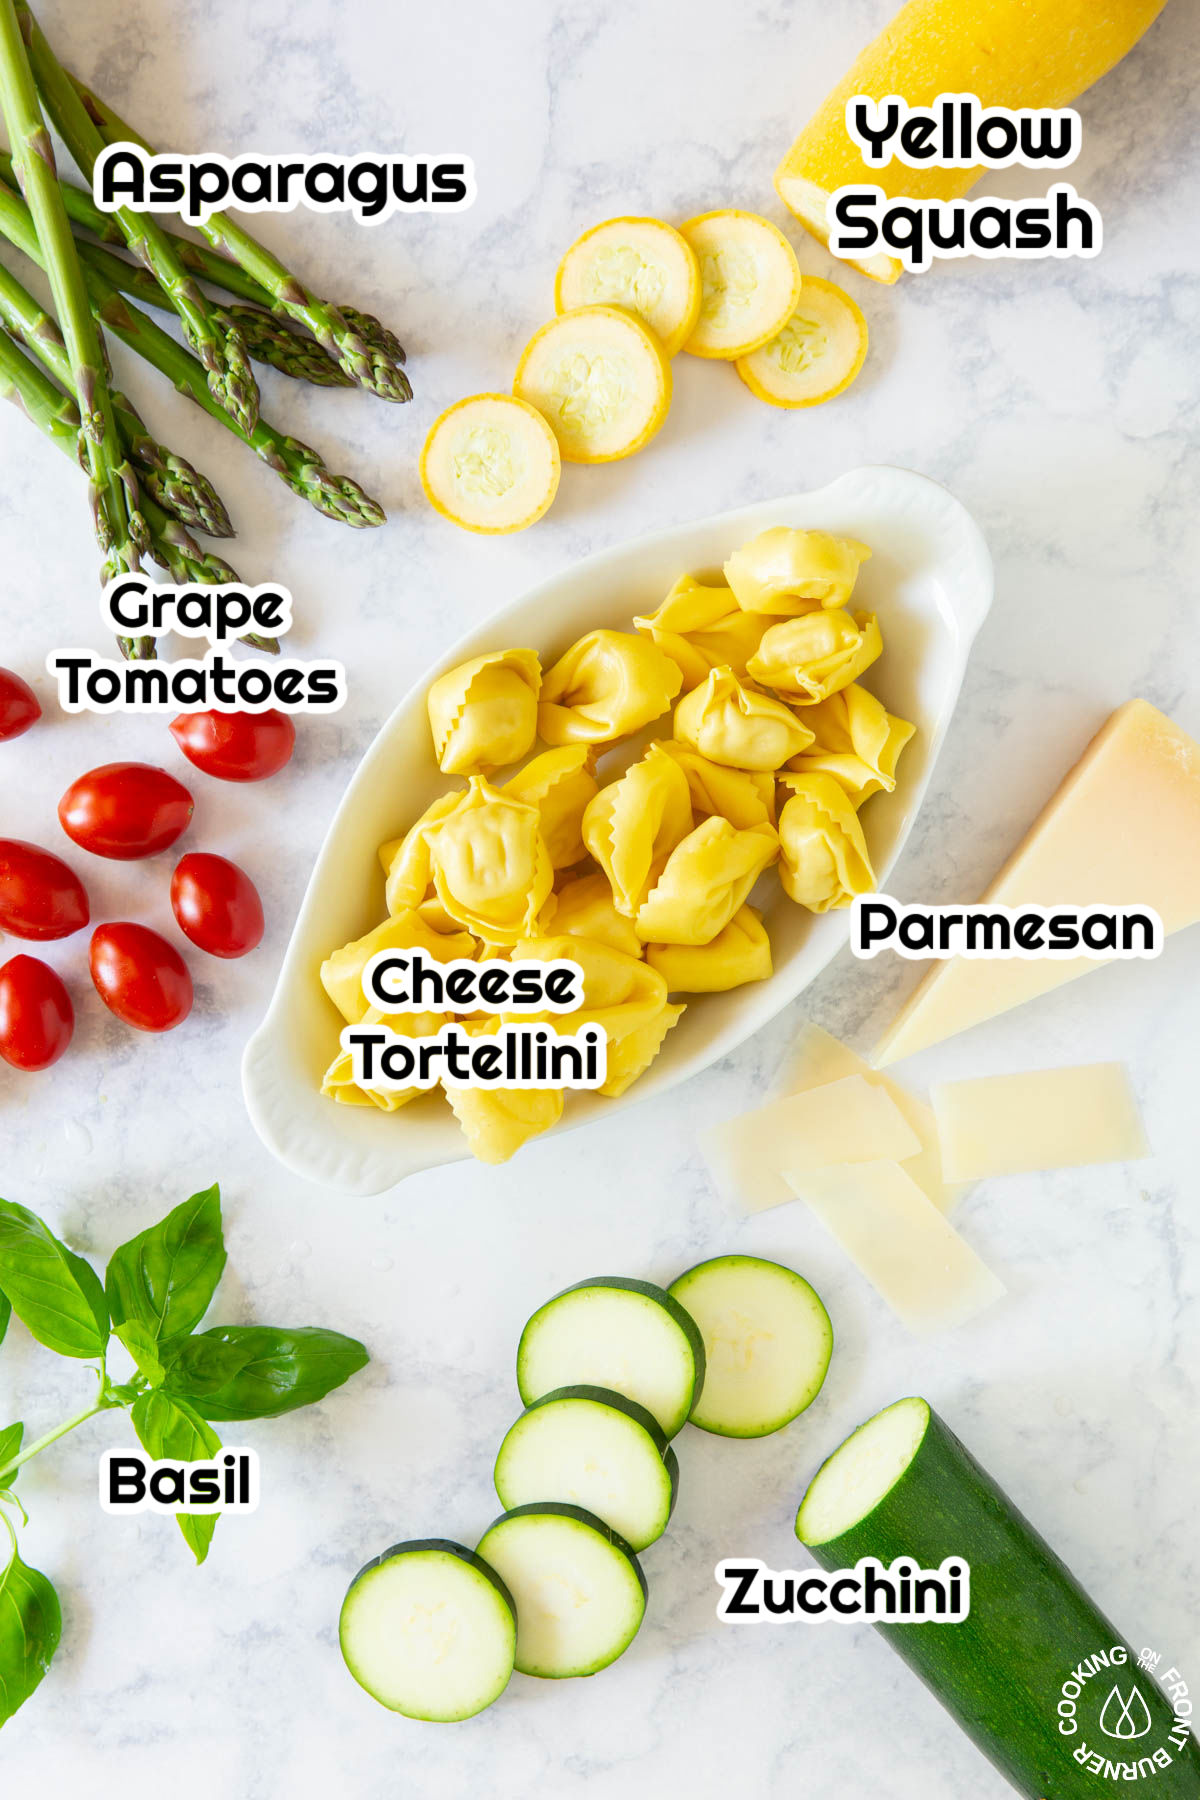 asparagus, grape tomatoes, tortellini, parmesan cheese, basil, squash on a board